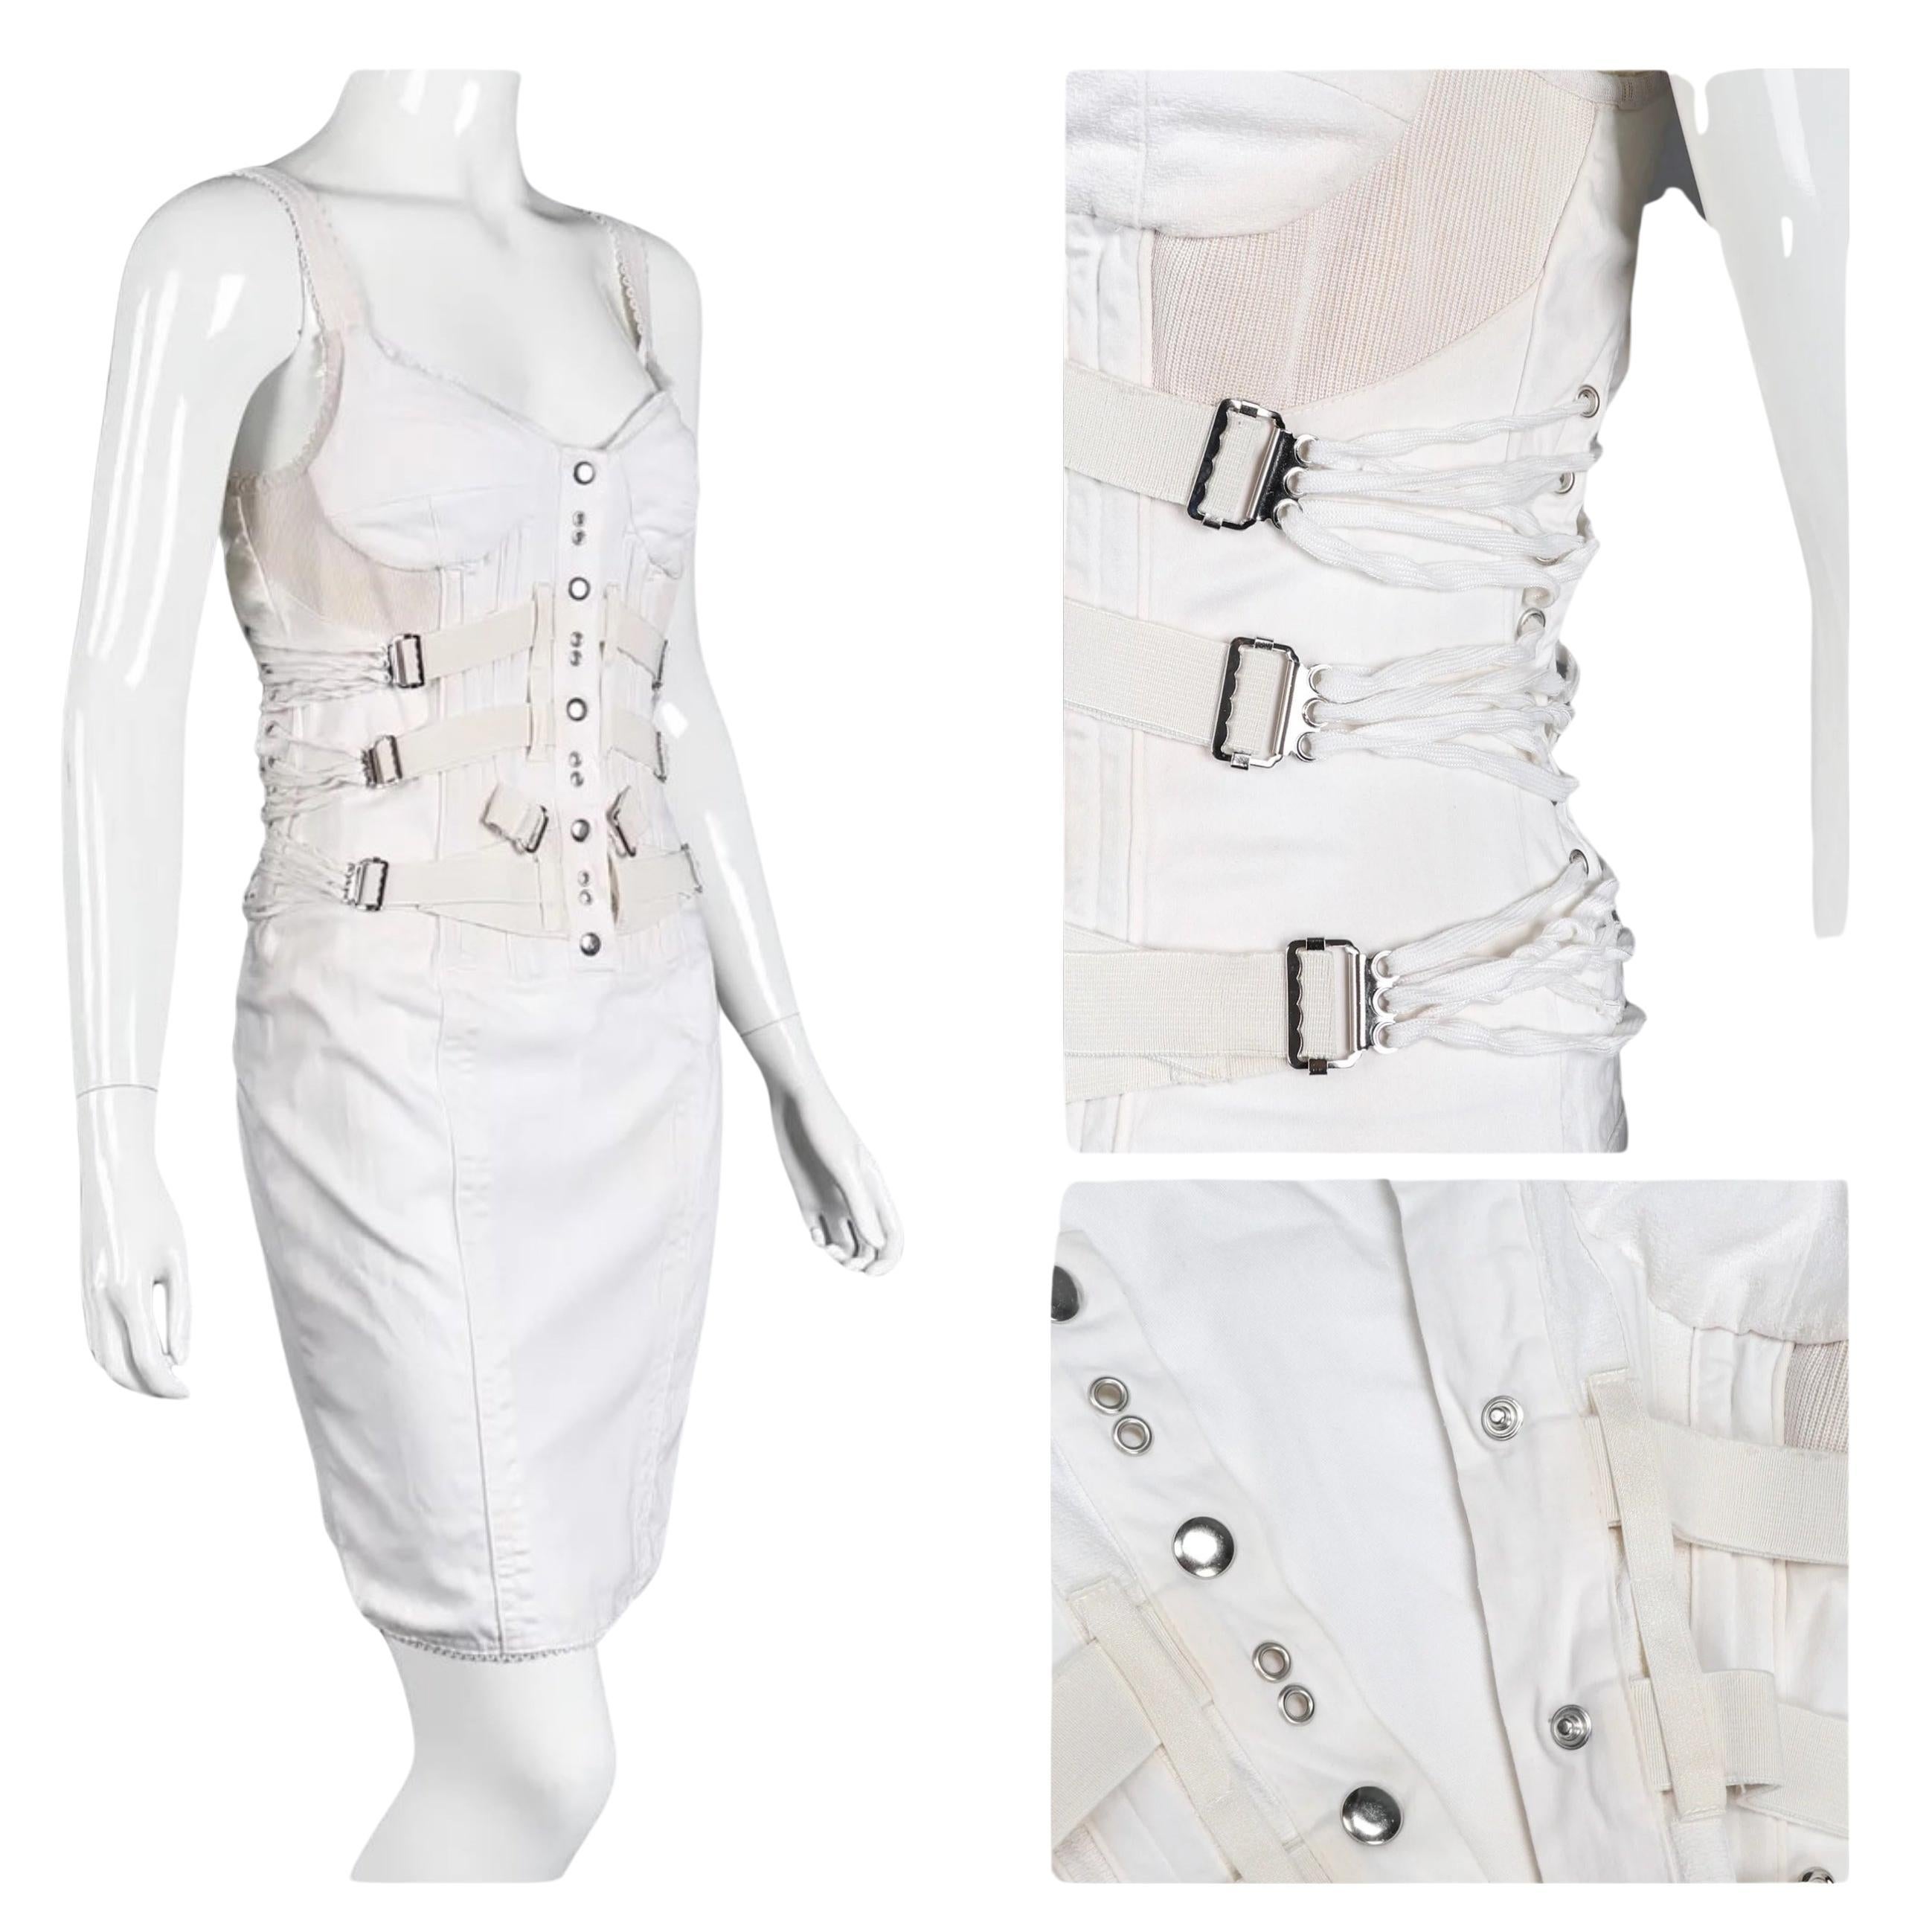 D&G Dolce und Gabbana Bondage Korsett-Kleid mit Schnürung und Bustierriemen und Cargo-Korsett